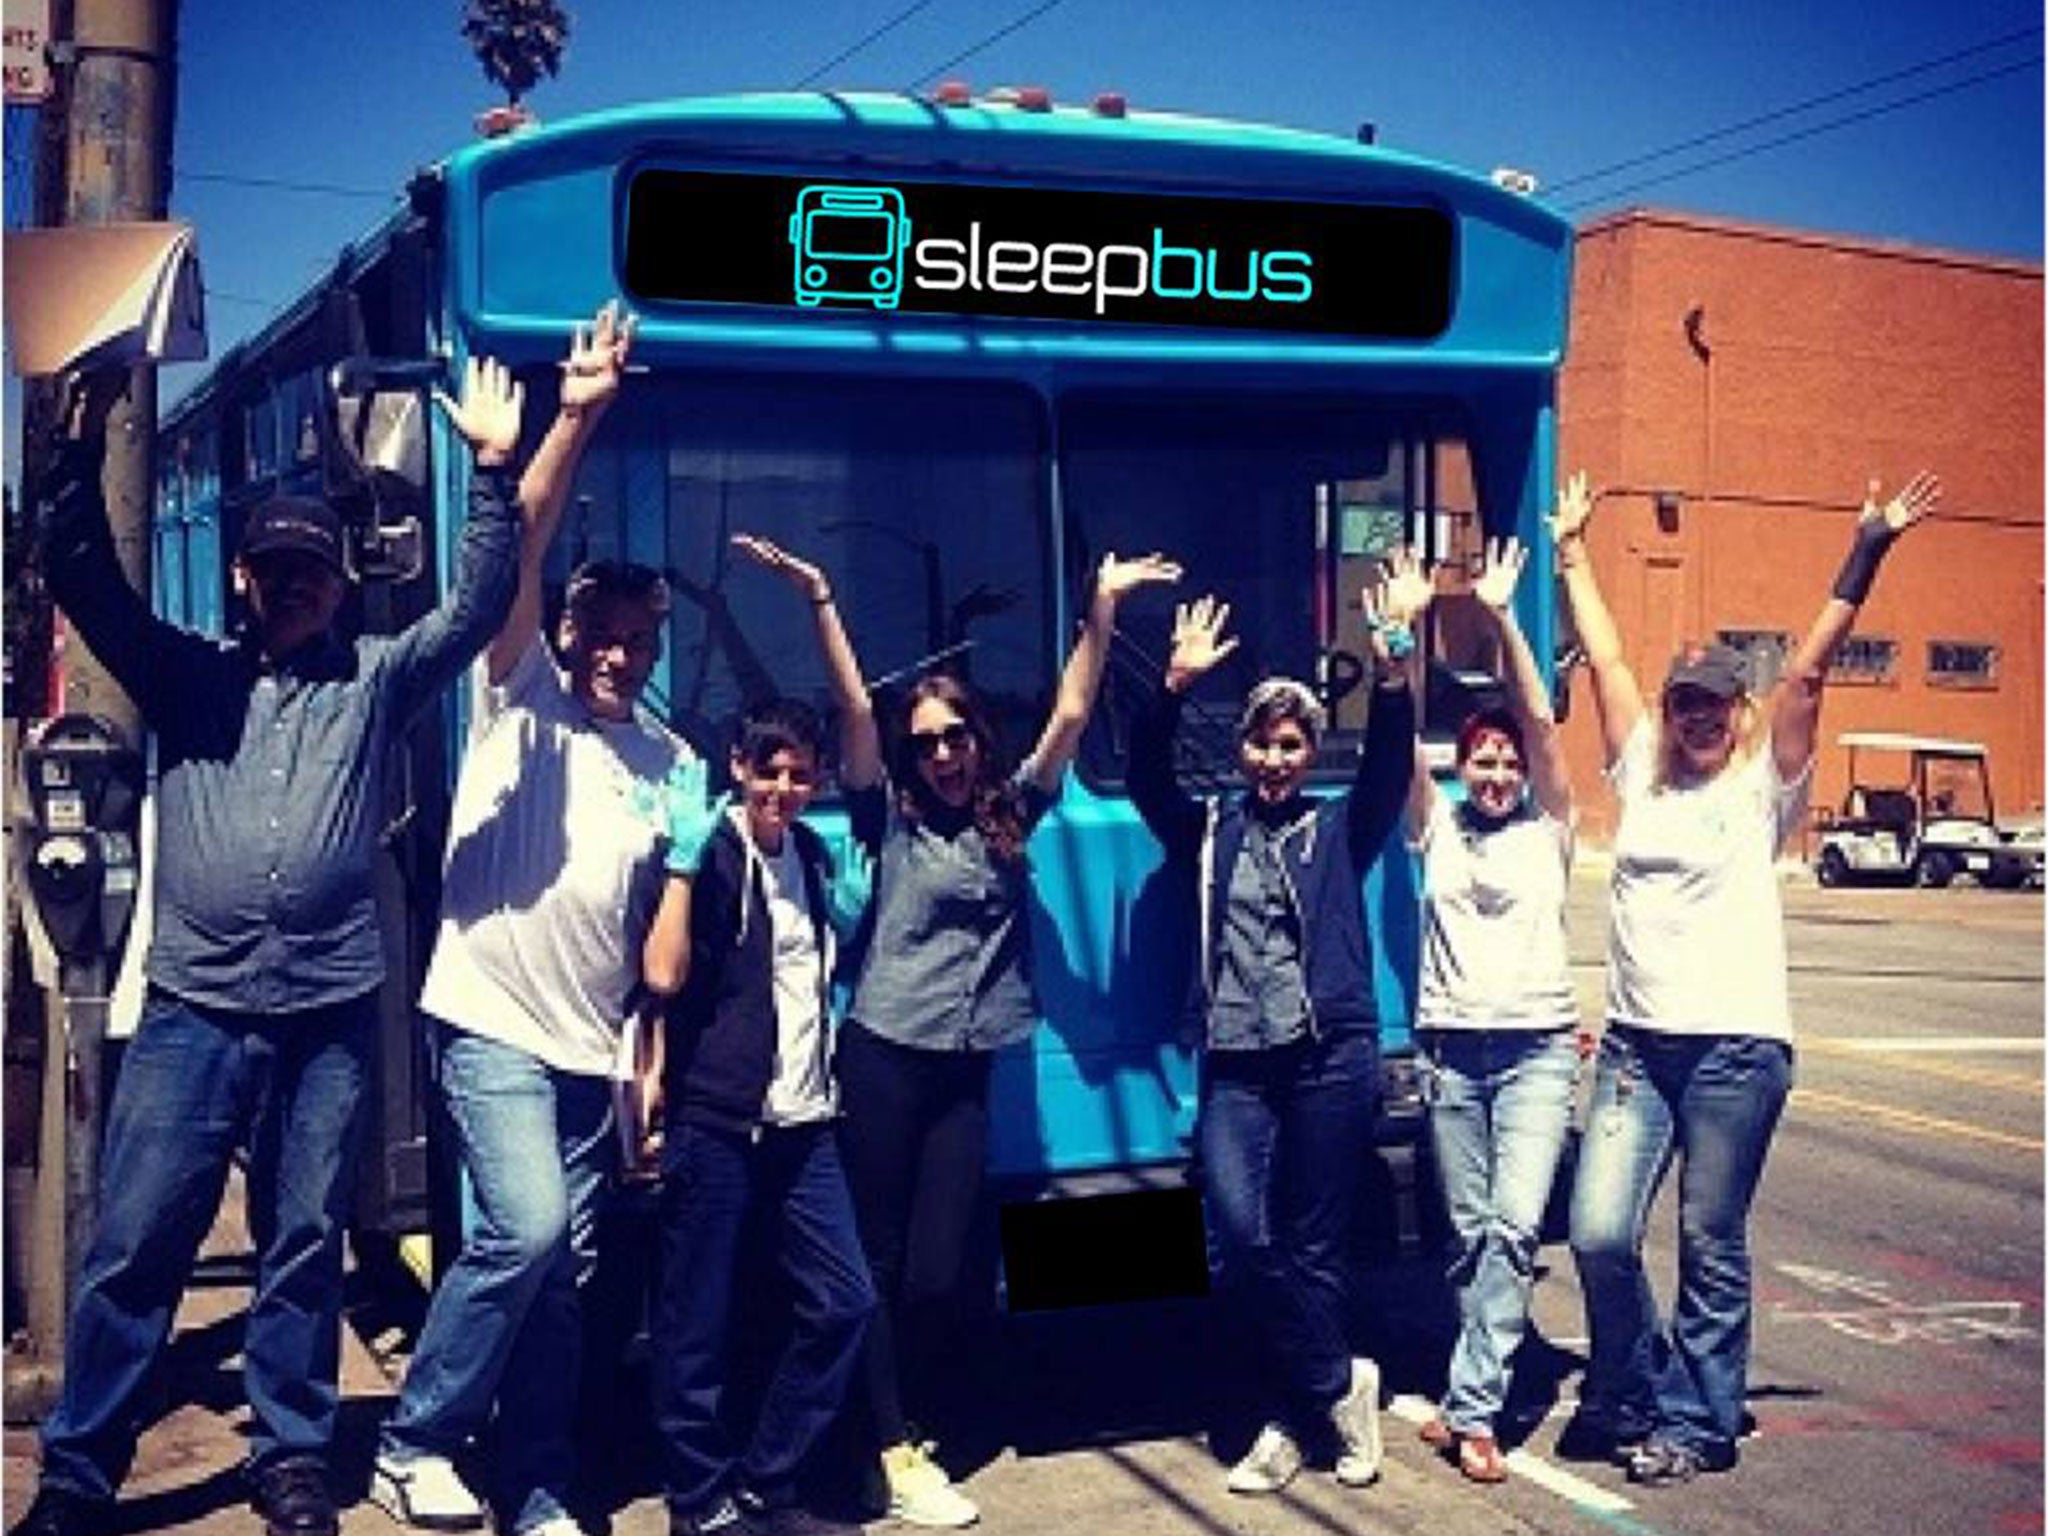 A concept design for the Sleepbus